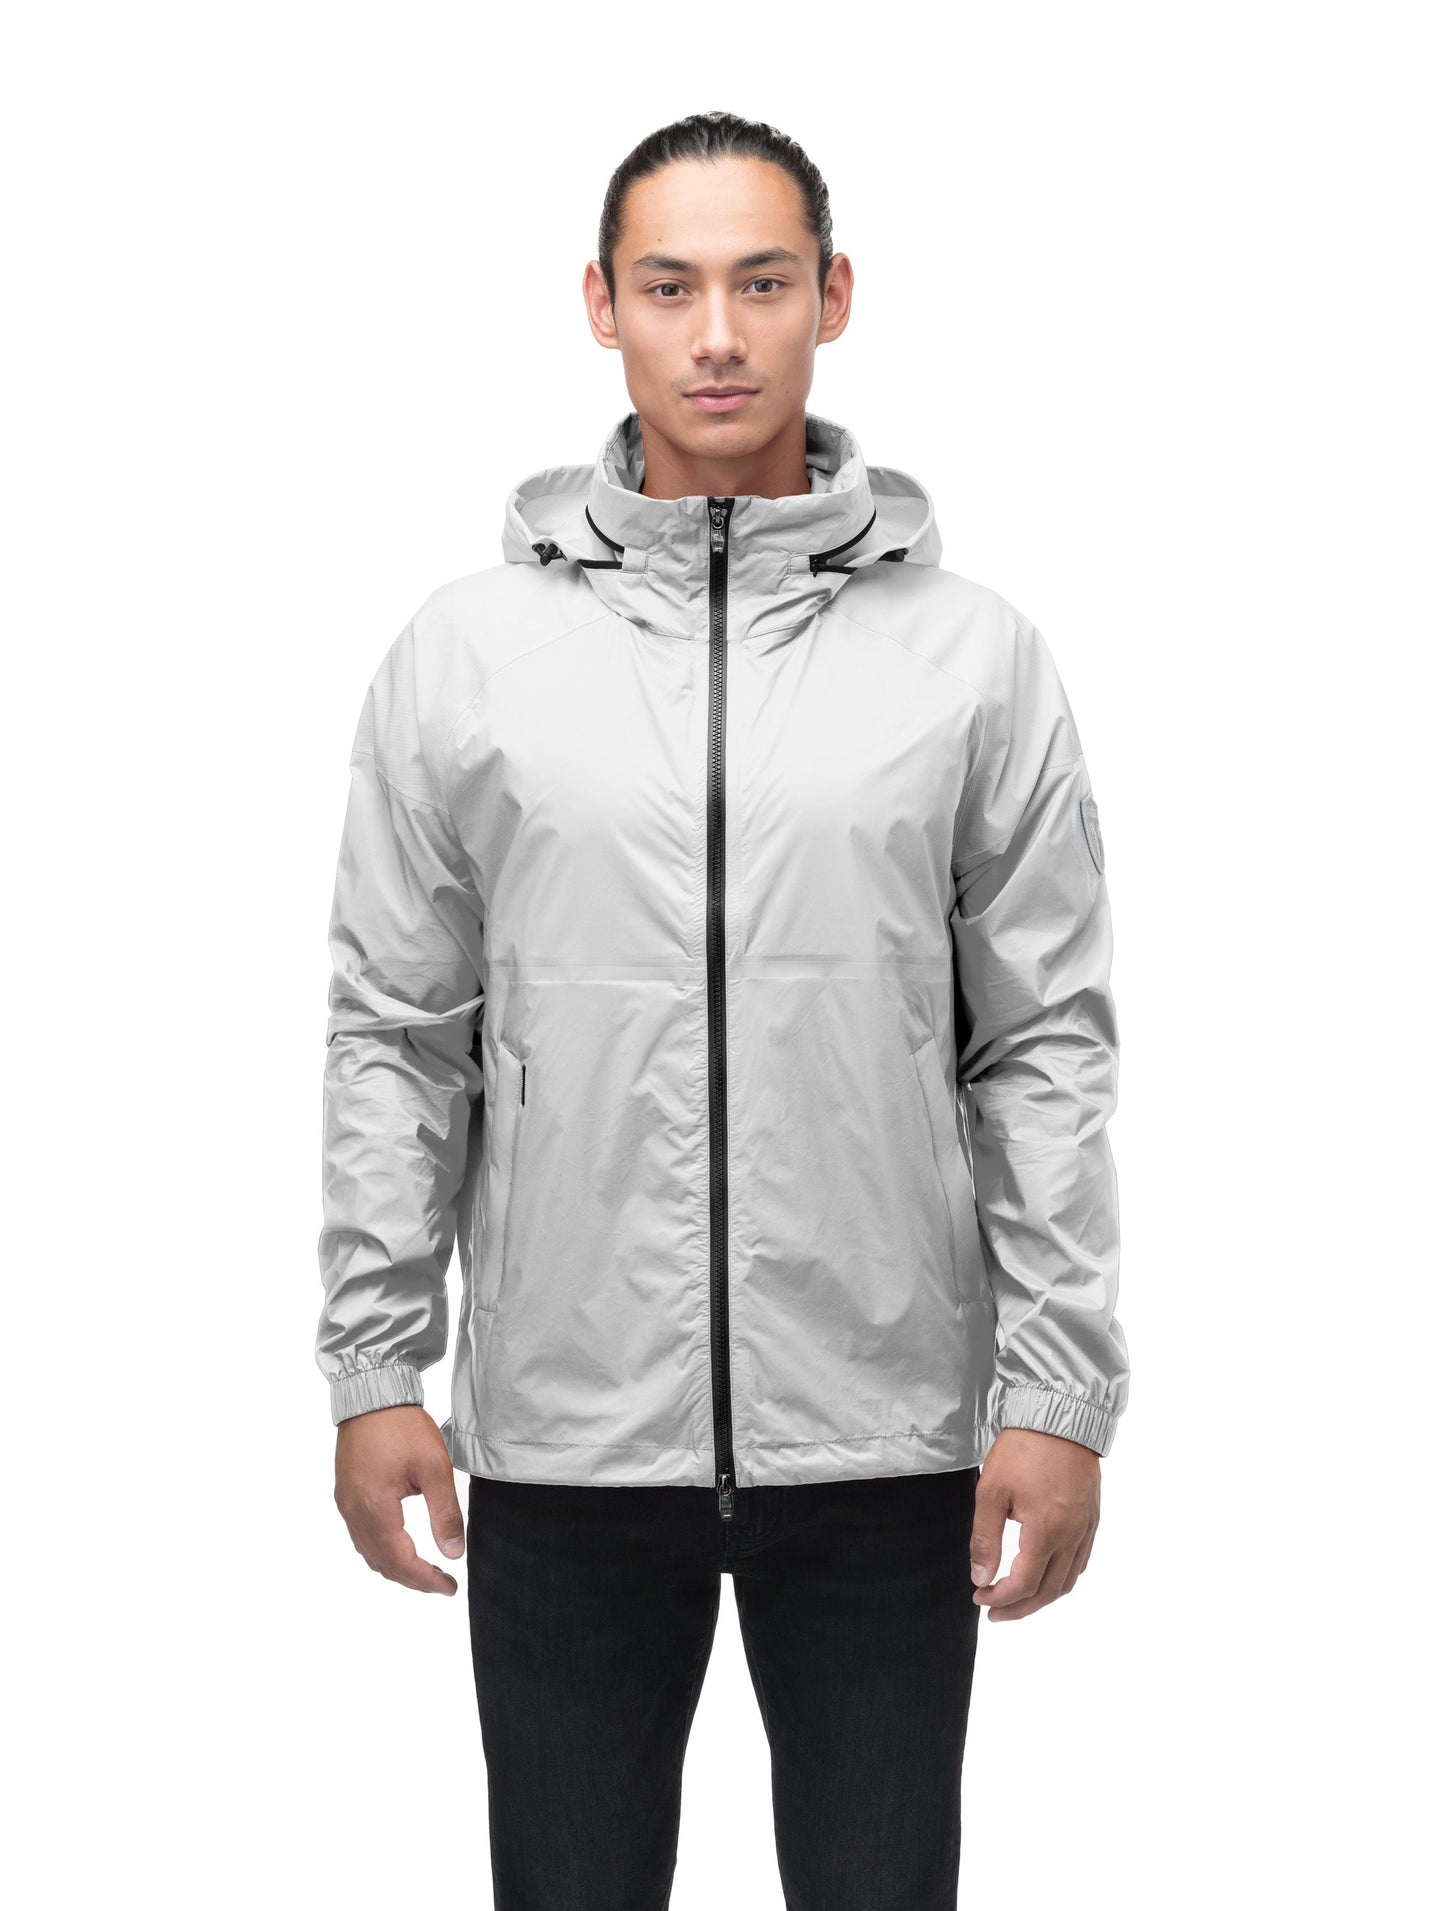 Men's hip length waterproof jacket with tuckable hood and 2-way zipper in Light Grey